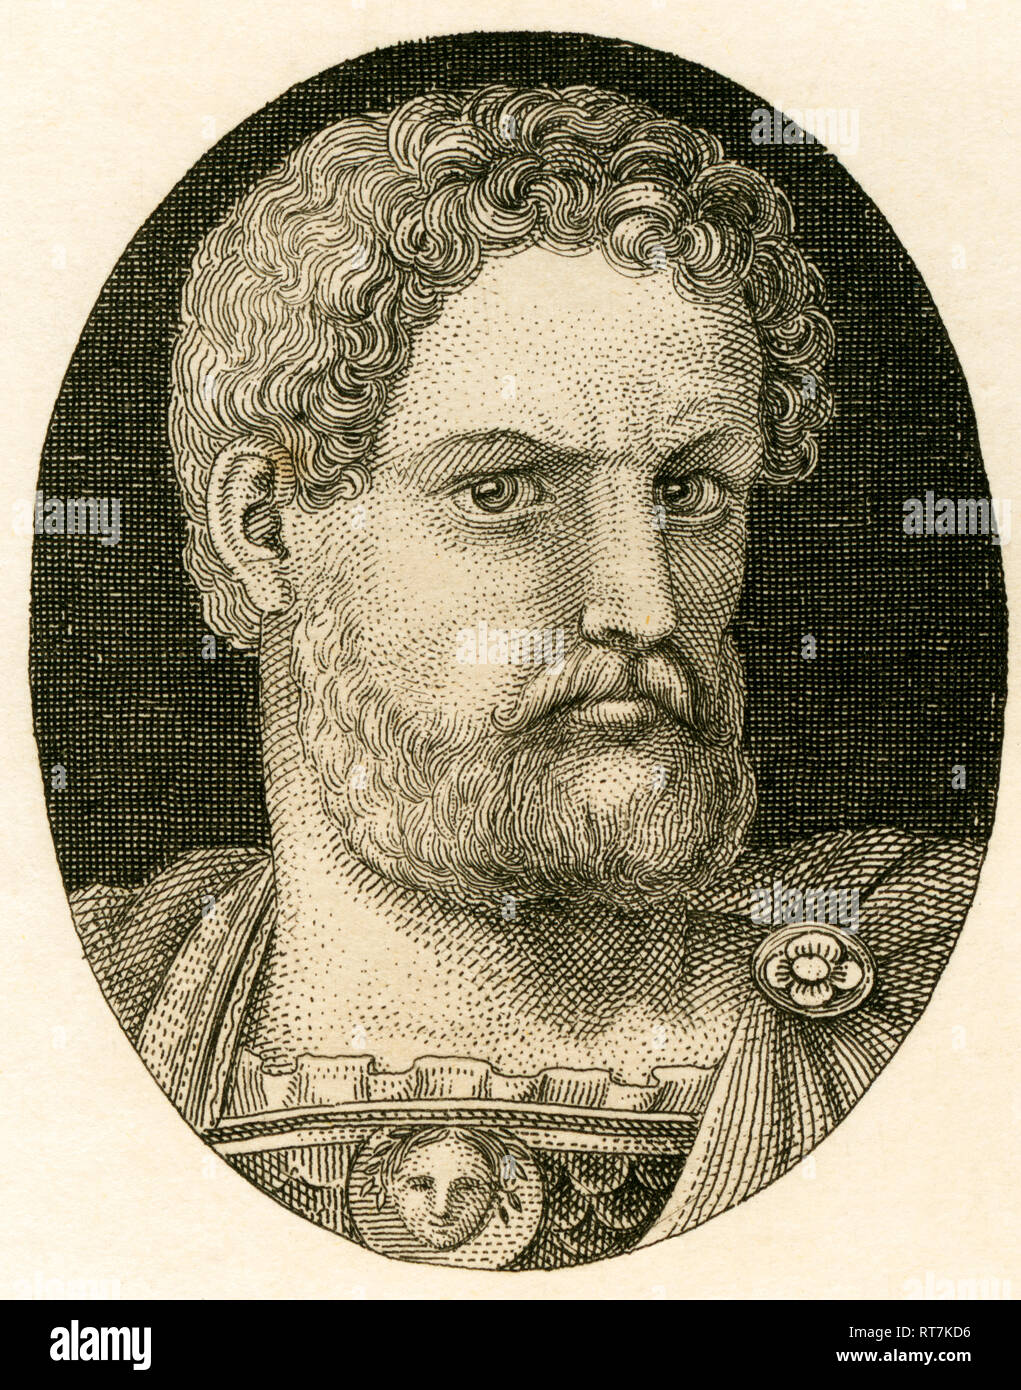 Adriano, emperador romano, grabado de Strahlheim copperplate, aproximadamente 1840ª., Copyright del artista no ha de ser borrado Foto de stock